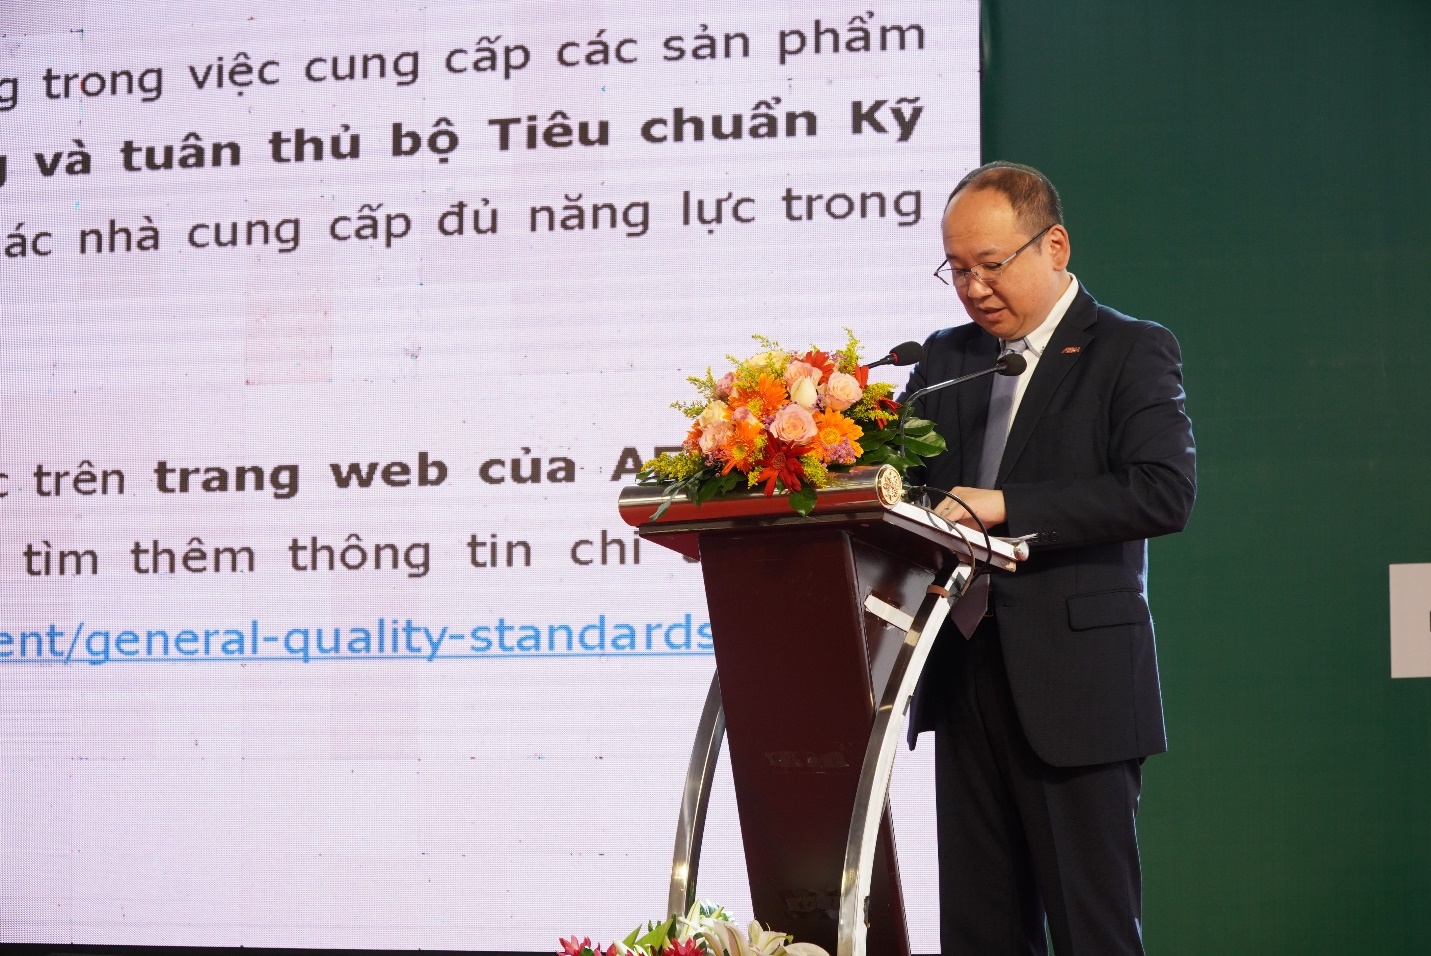 AEON Vietnam accompanying Vietnam’s sustainable development for over 10 years